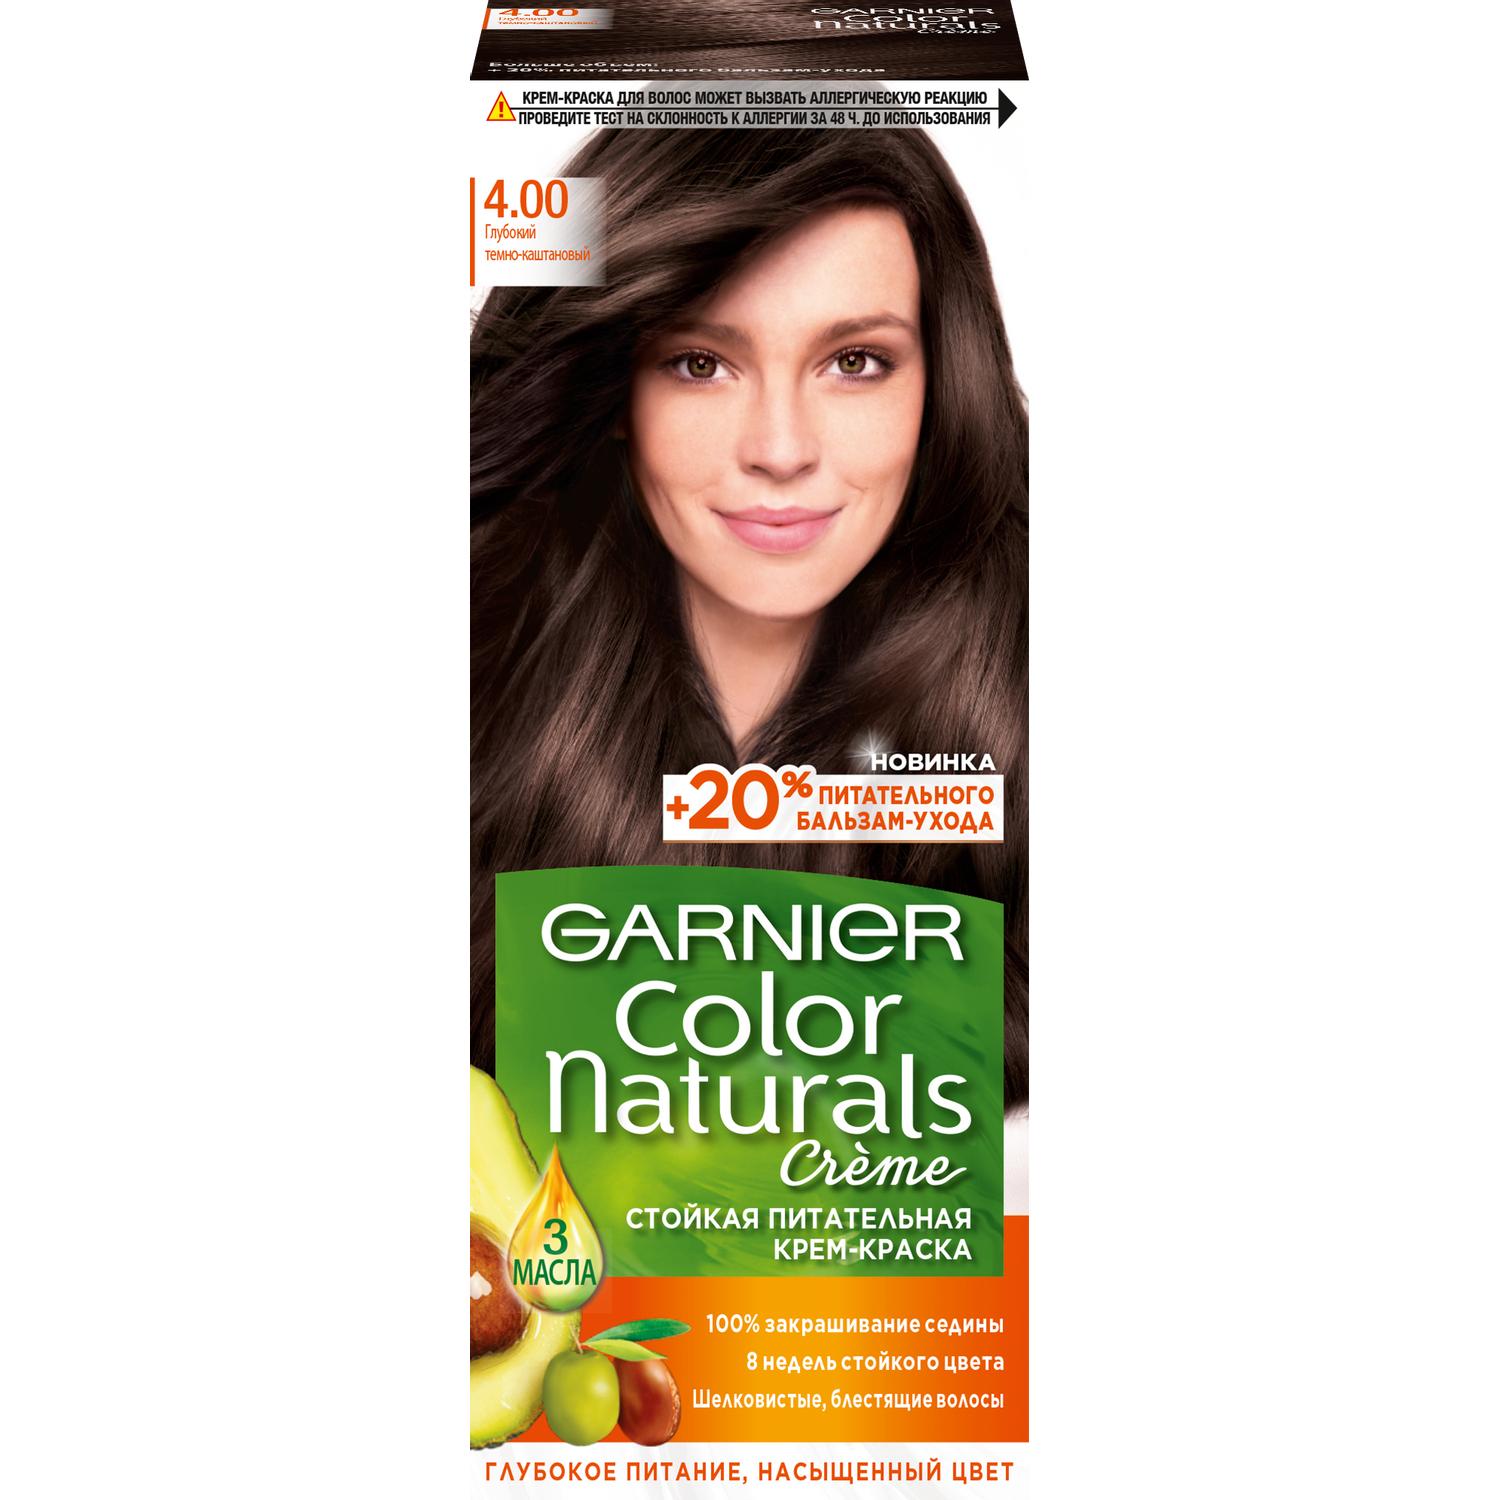 Крем-краска для волос Garnier Color Naturals 4.00 Глубокий темно-каштановый 110 мл краска для волос syoss color 6 8 темно русый